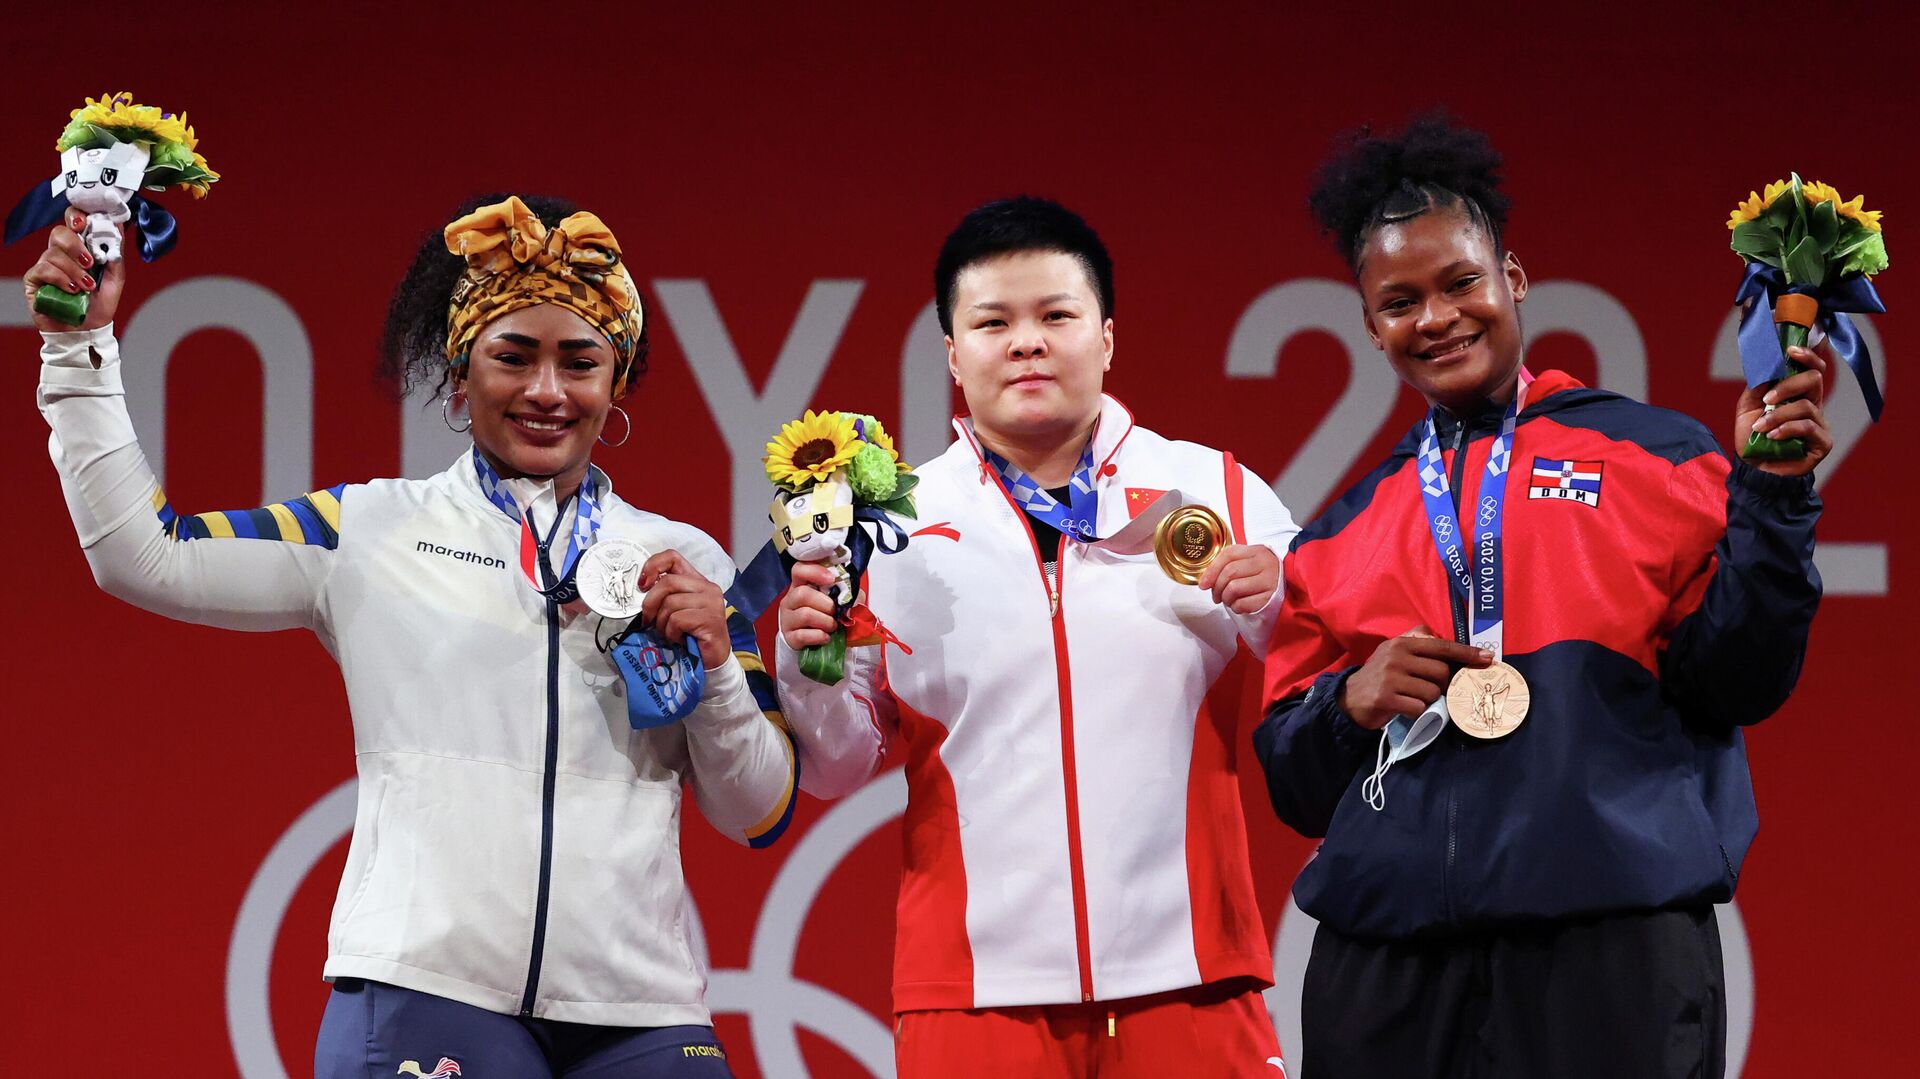 El medallista de oro Wang Zhouyu, de China, la medallista de plata Tamara Salazar, de Ecuador, y la medallista de bronce Crismery Santana, de República Dominicana - Sputnik Mundo, 1920, 02.08.2021